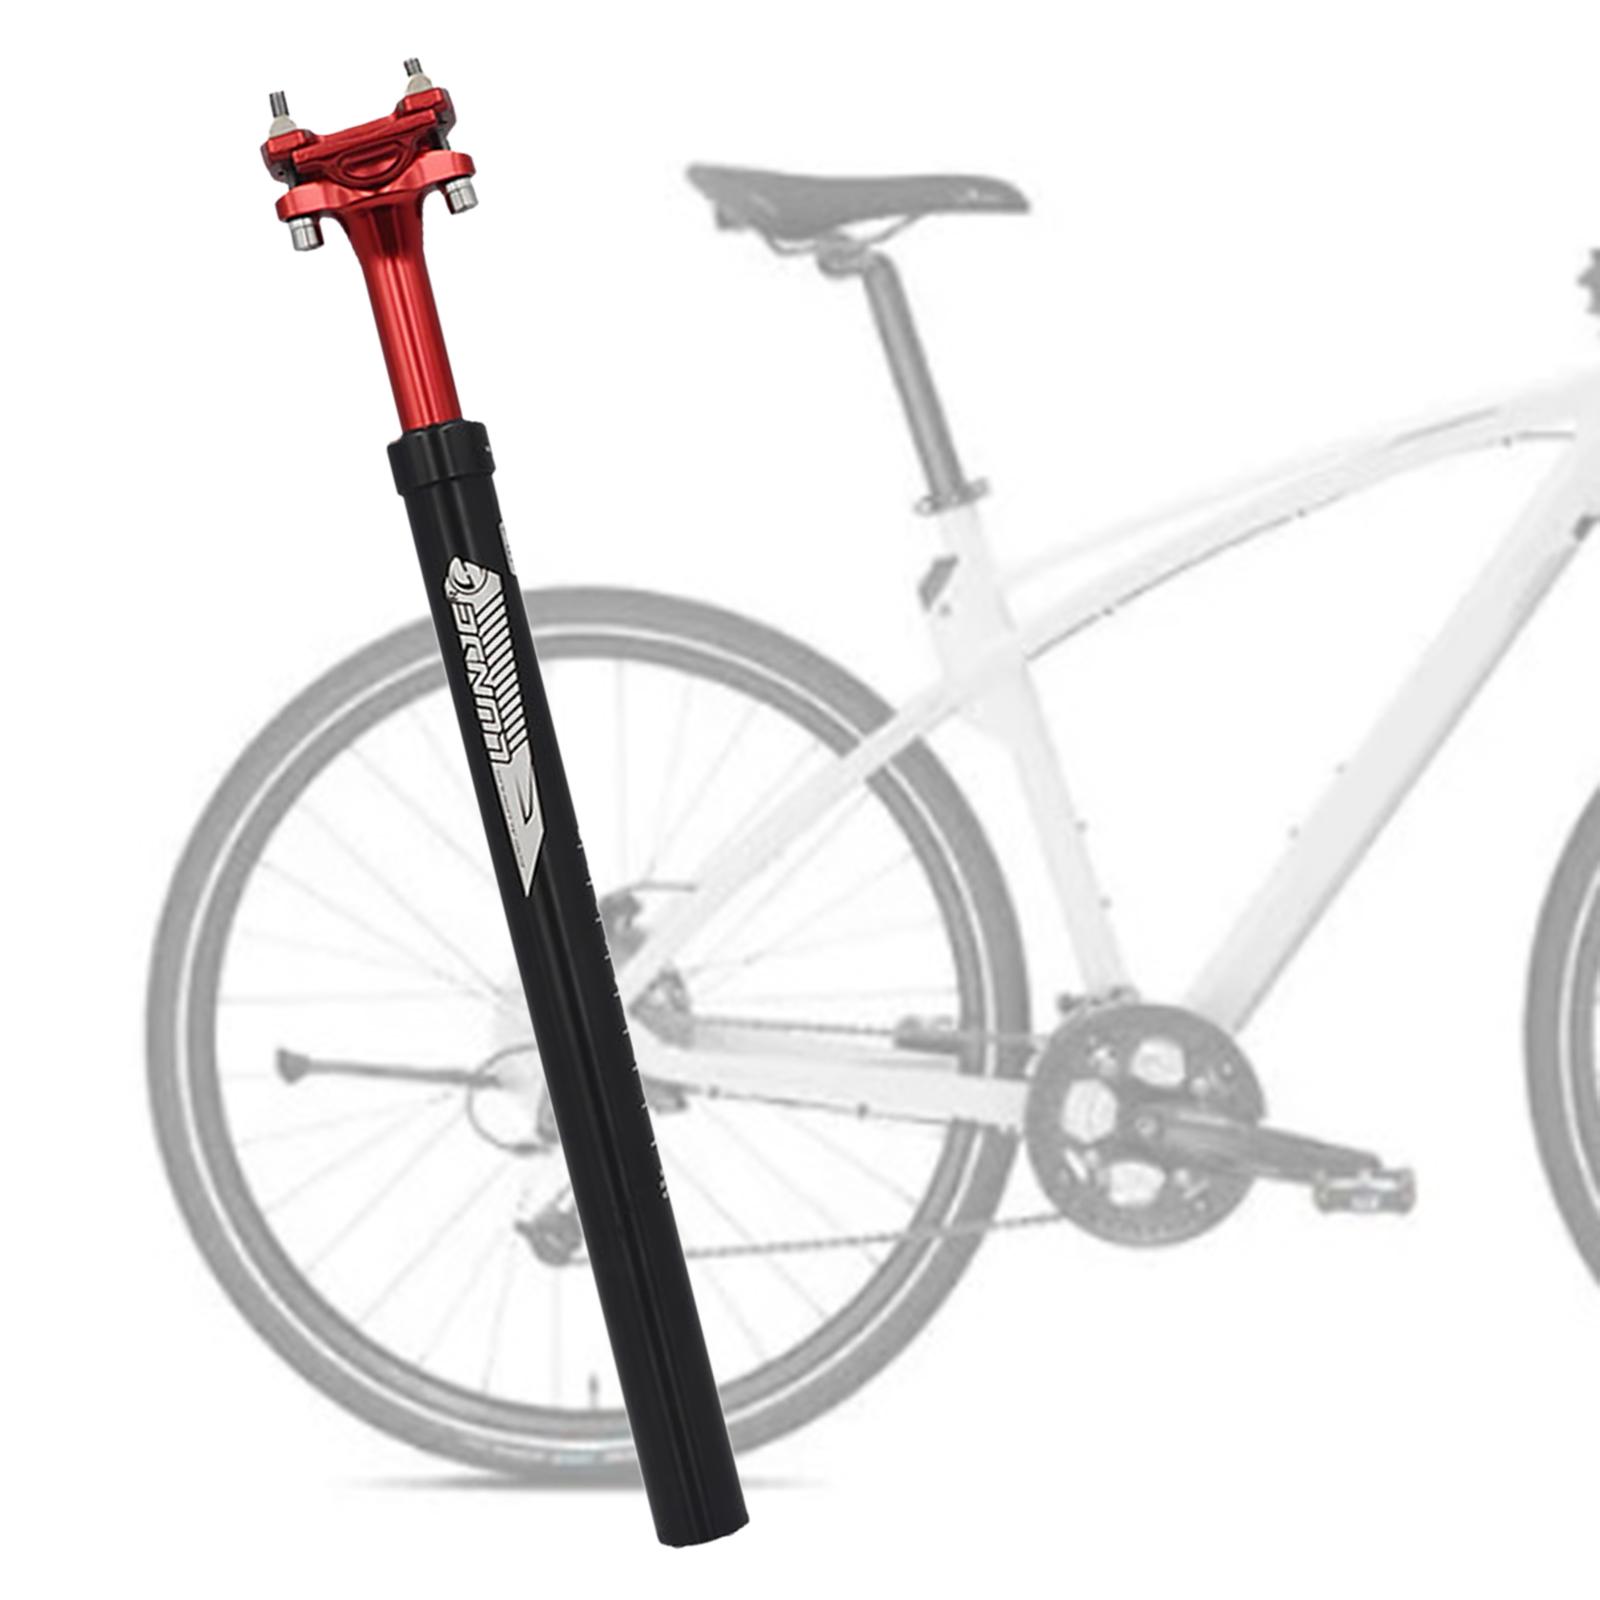 Bike Seatpost Bicycle Shockproof Seat Post Pole Repair 27.2mm Red